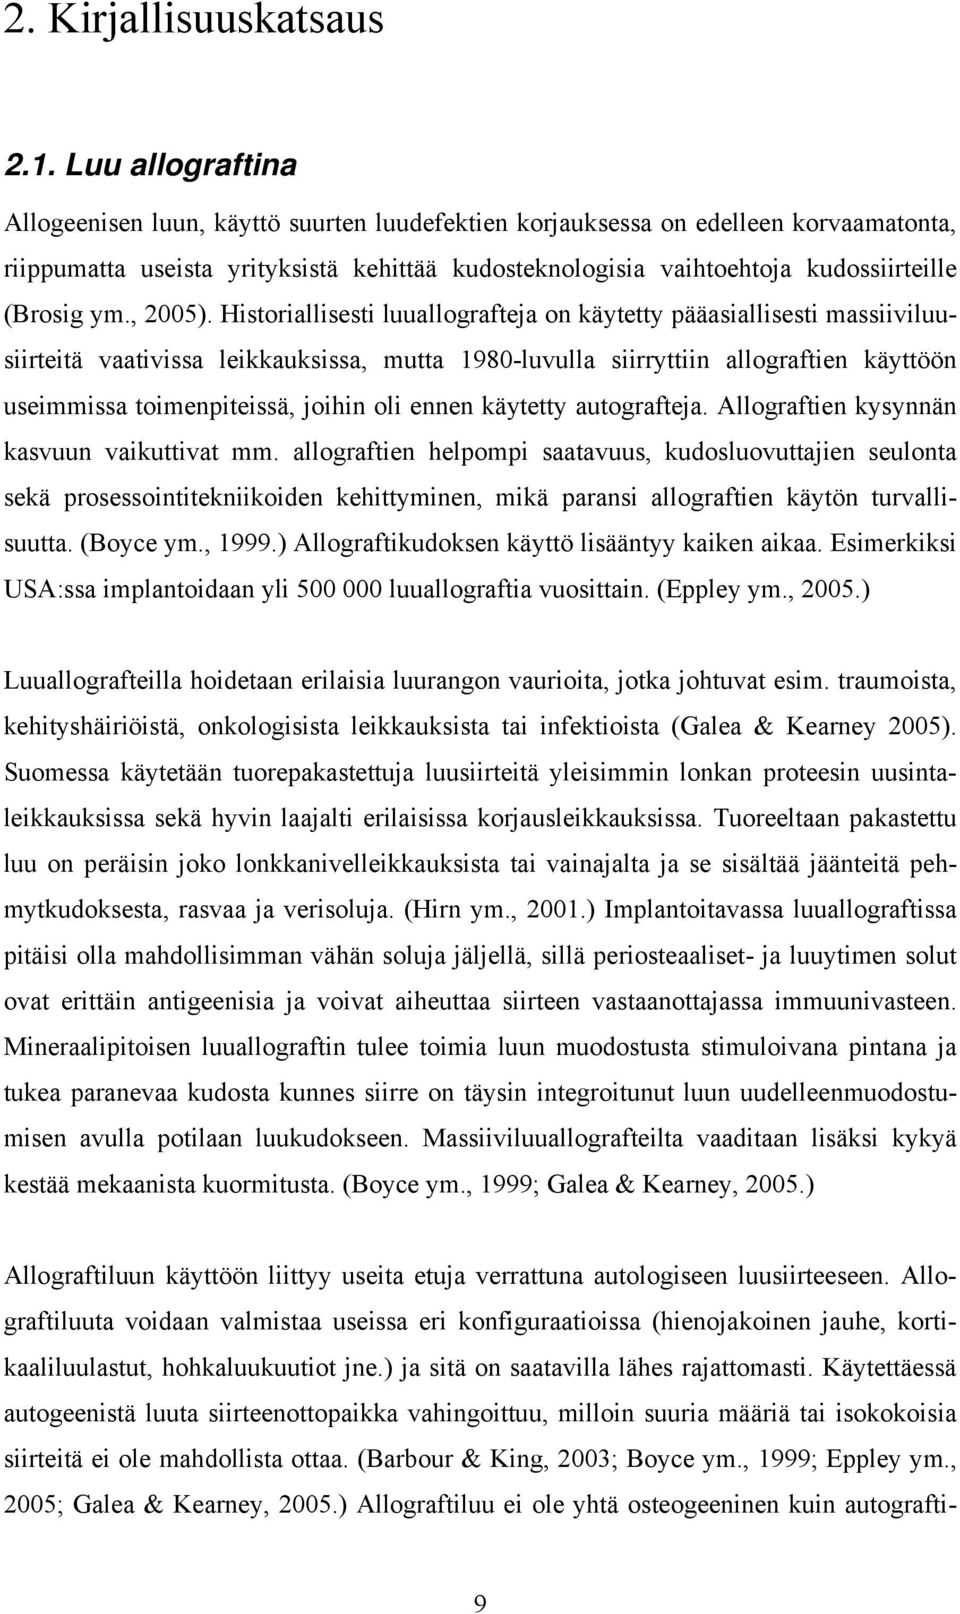 ym., 2005).